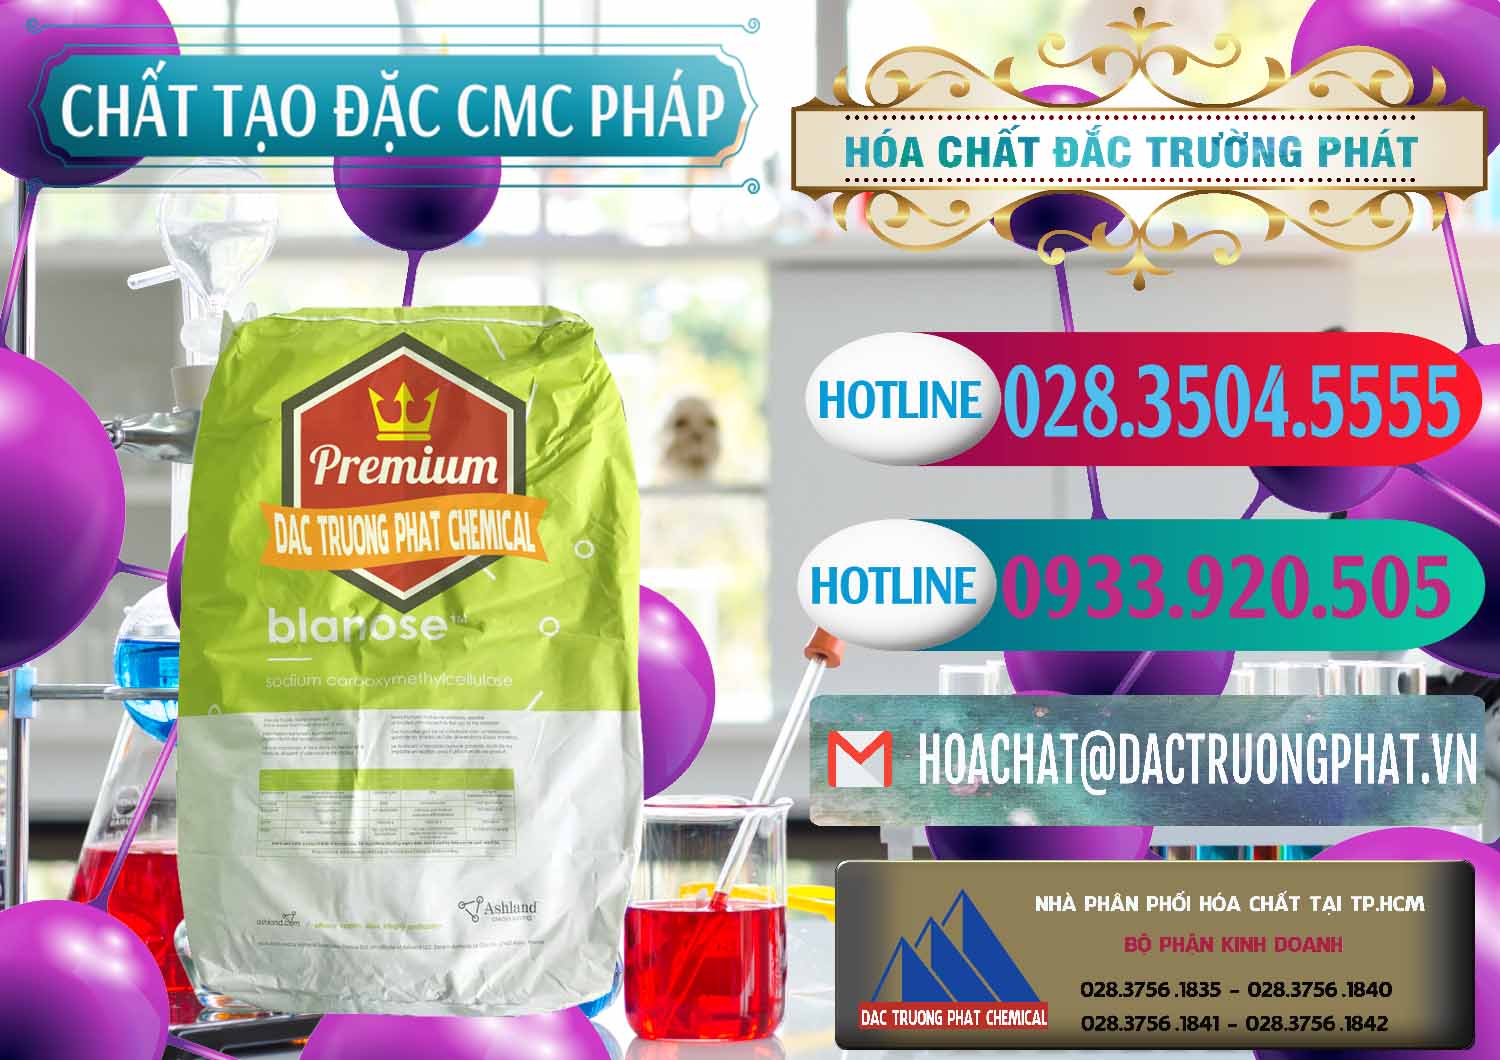 Nơi chuyên kinh doanh _ bán Chất Tạo Đặc CMC - Carboxyl Methyl Cellulose Pháp France - 0394 - Phân phối & kinh doanh hóa chất tại TP.HCM - truongphat.vn